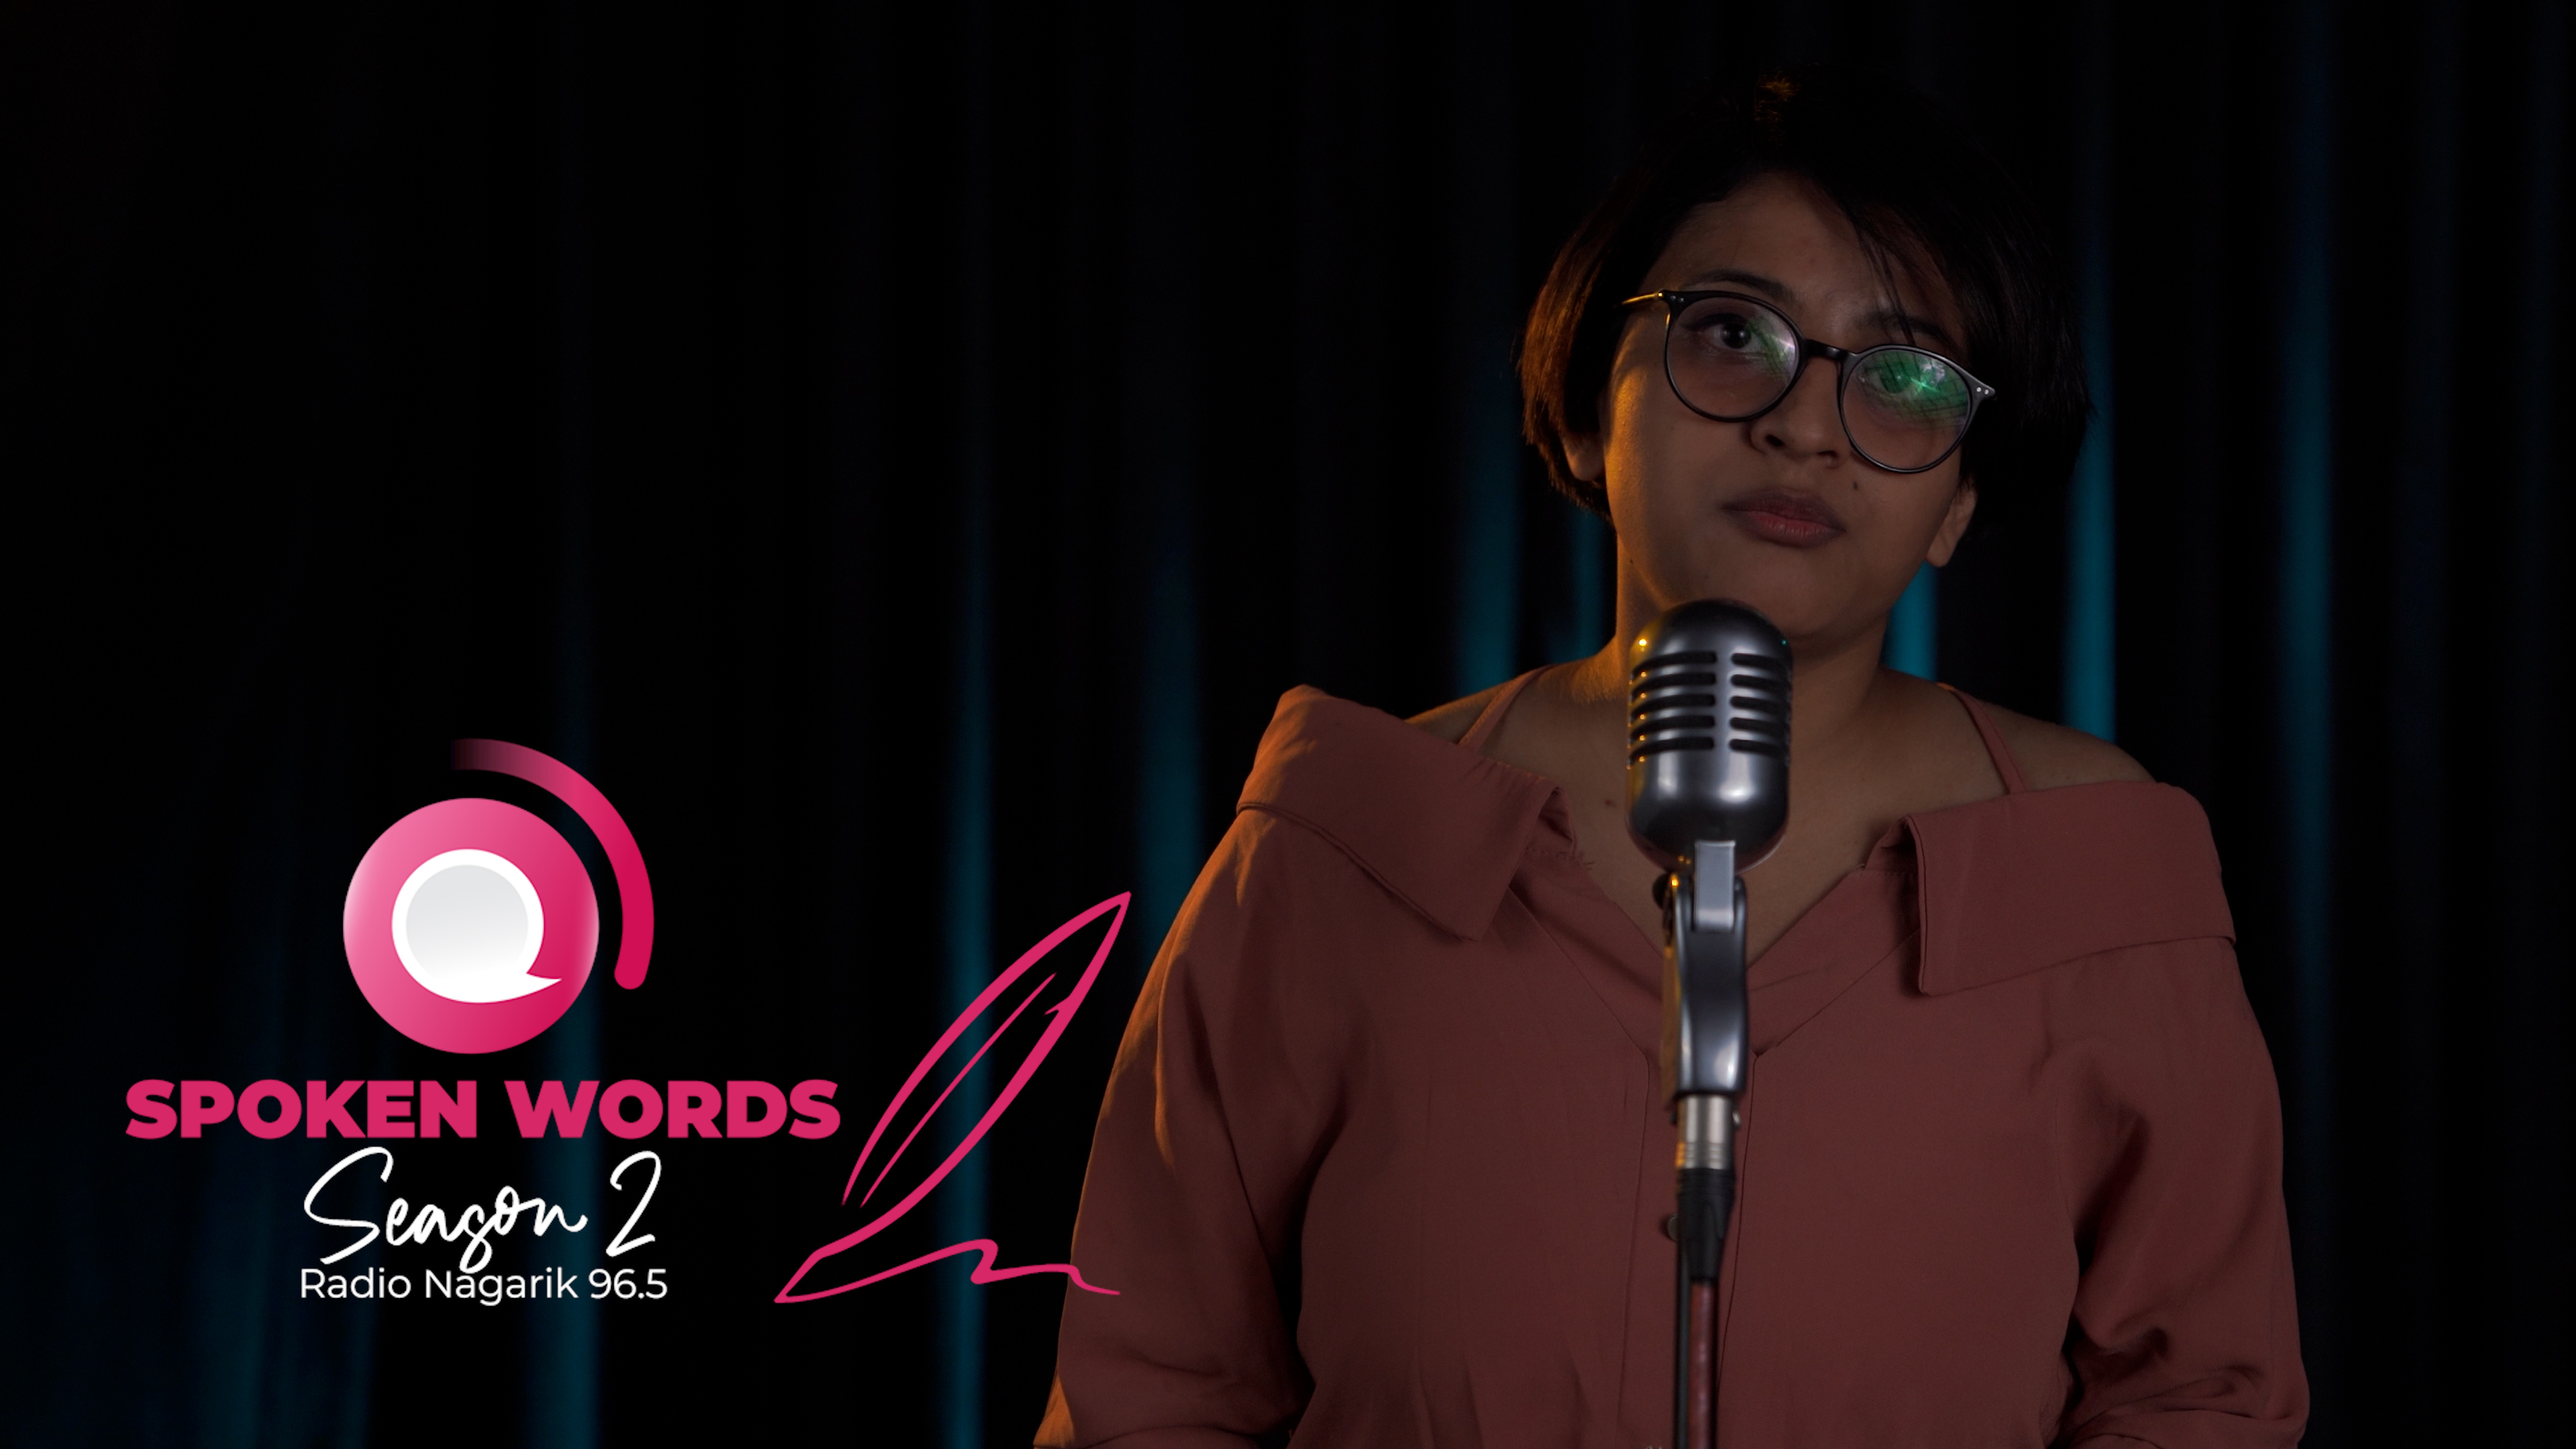 मेरो एउटै त सपना छ - Spoken Words | Jyoti Bashyal